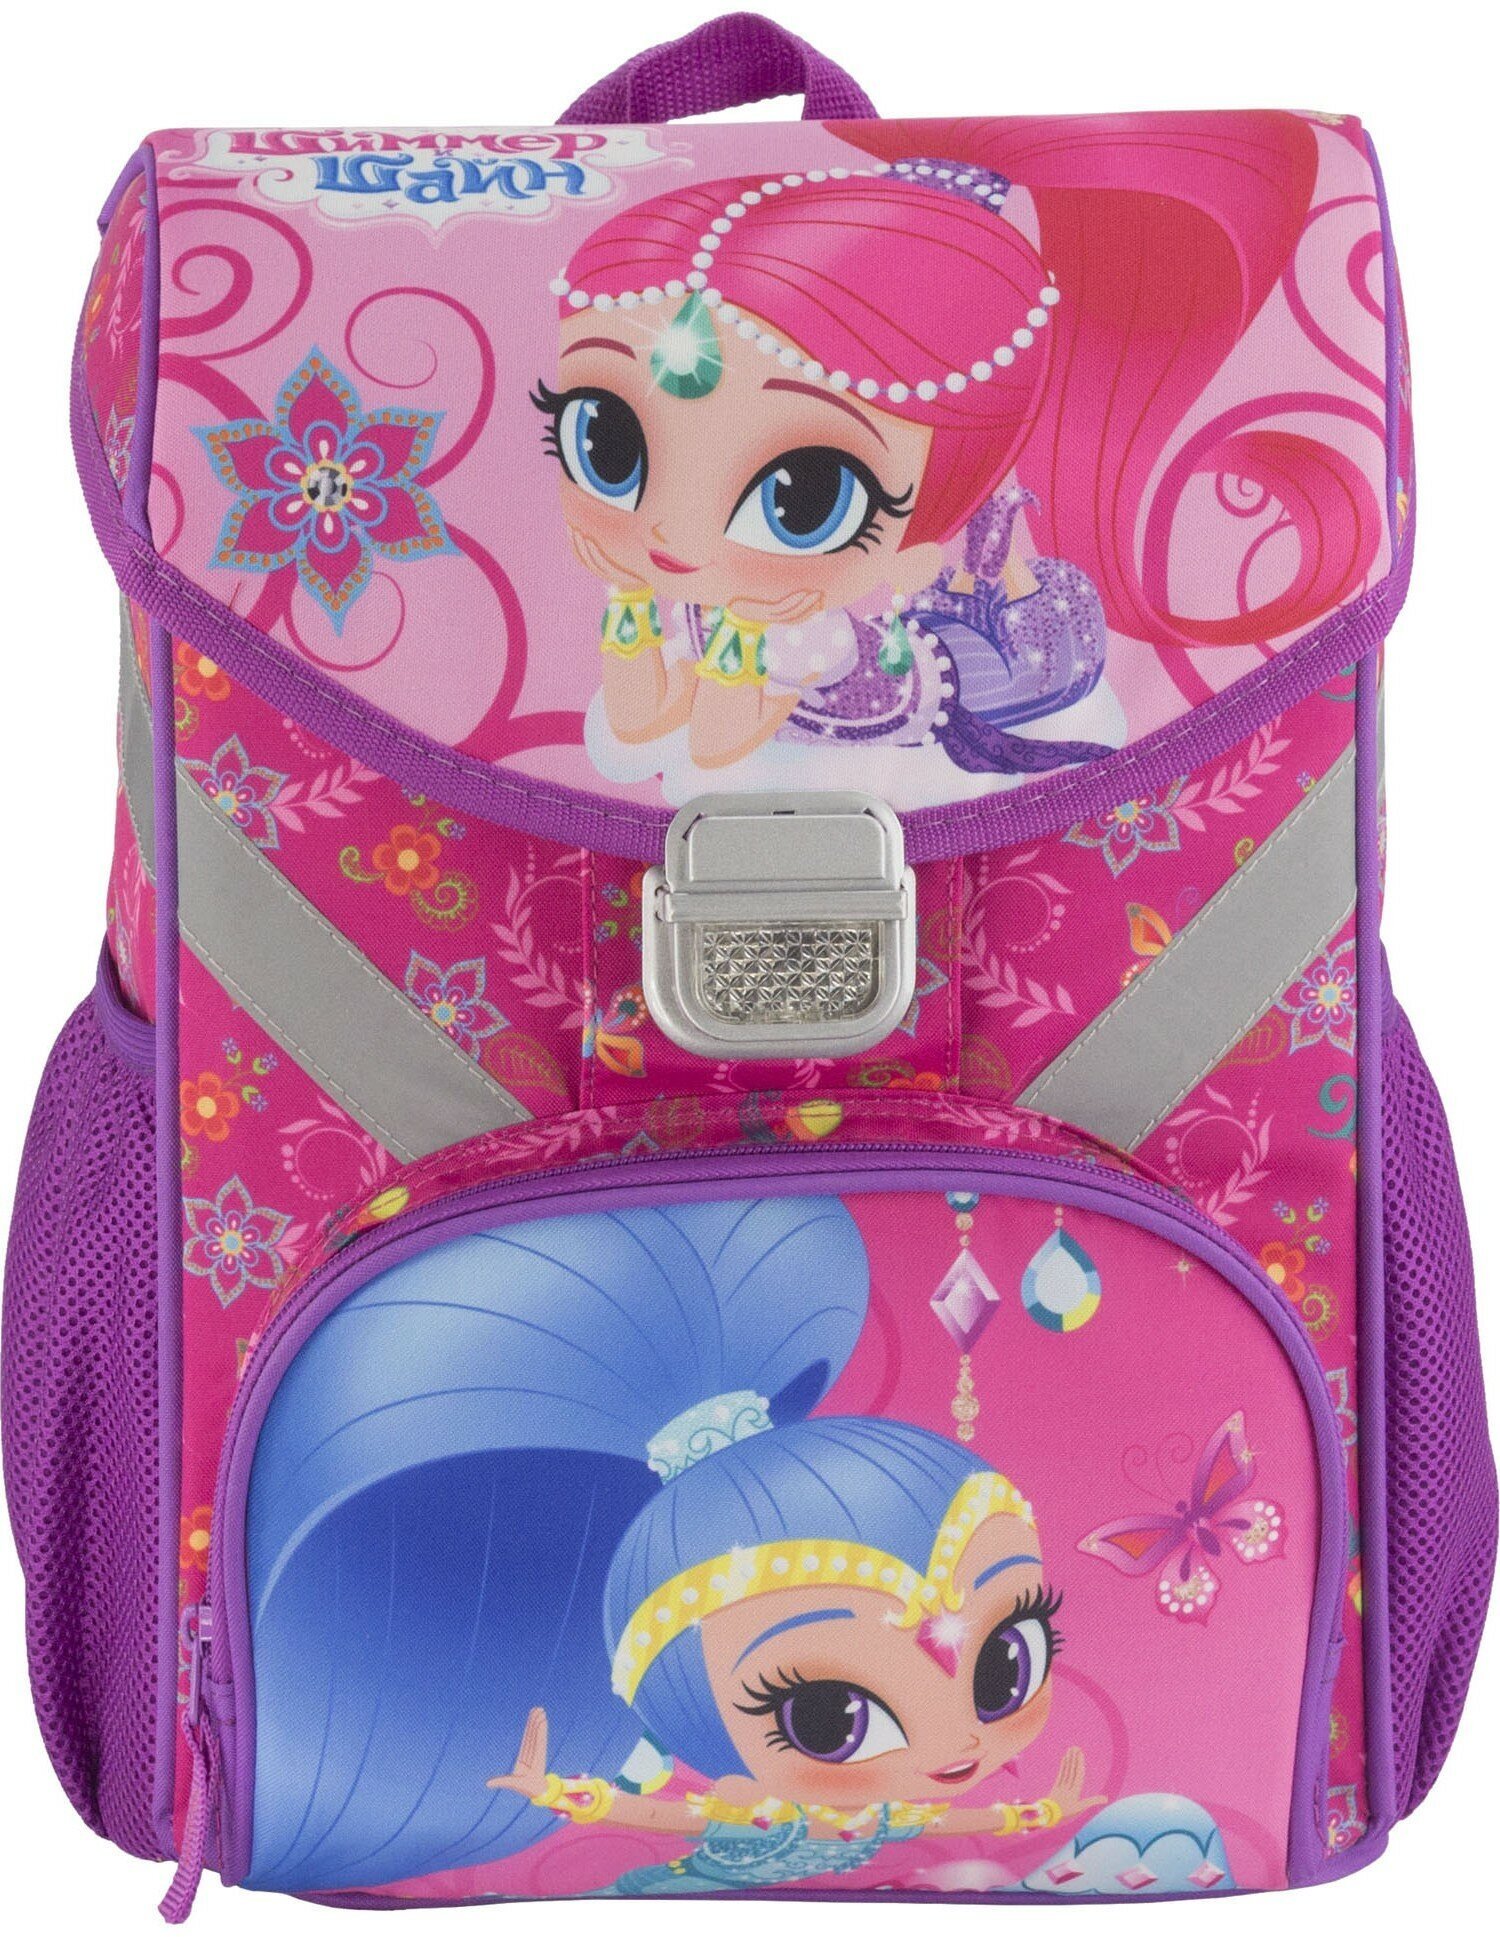 Ранец (рюкзак) Shimmer and Shine SSFB-MT1-158 профилактический с эргономической спинкой, для девочек.